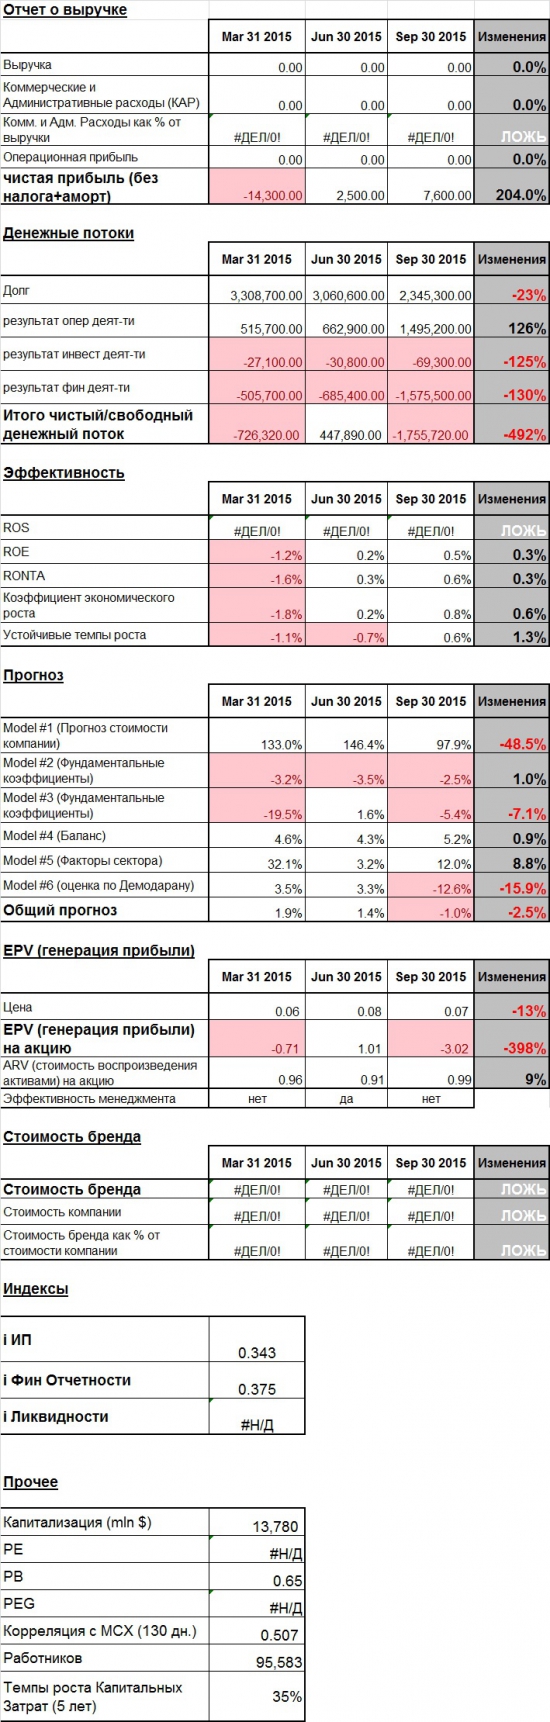 Текущее состояние VTBR (Банк ВТБ)